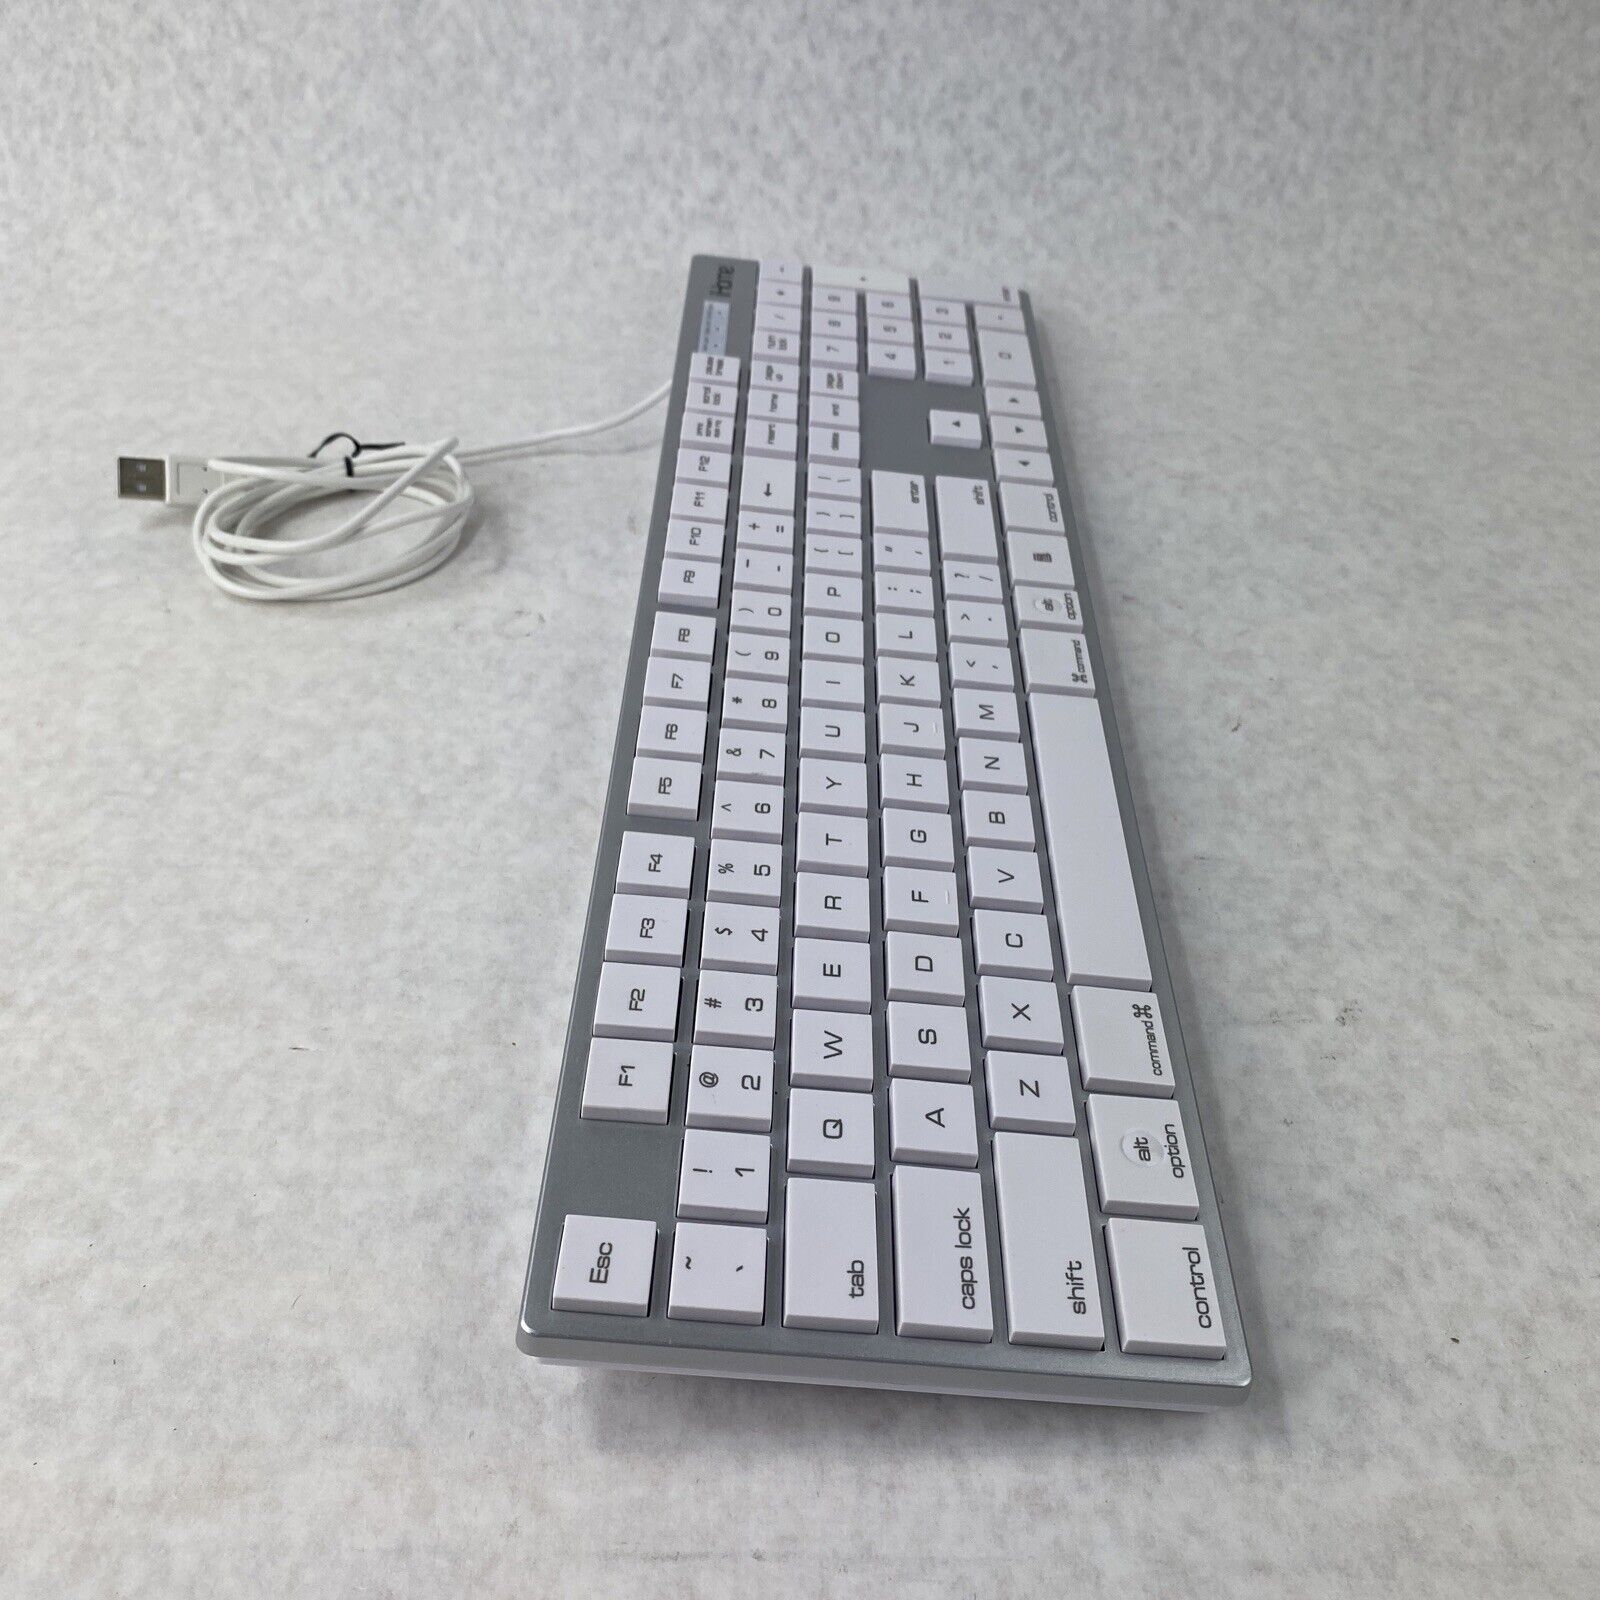 iHome IMAC-K121S Full Size Mac Keyboard USB - Tested